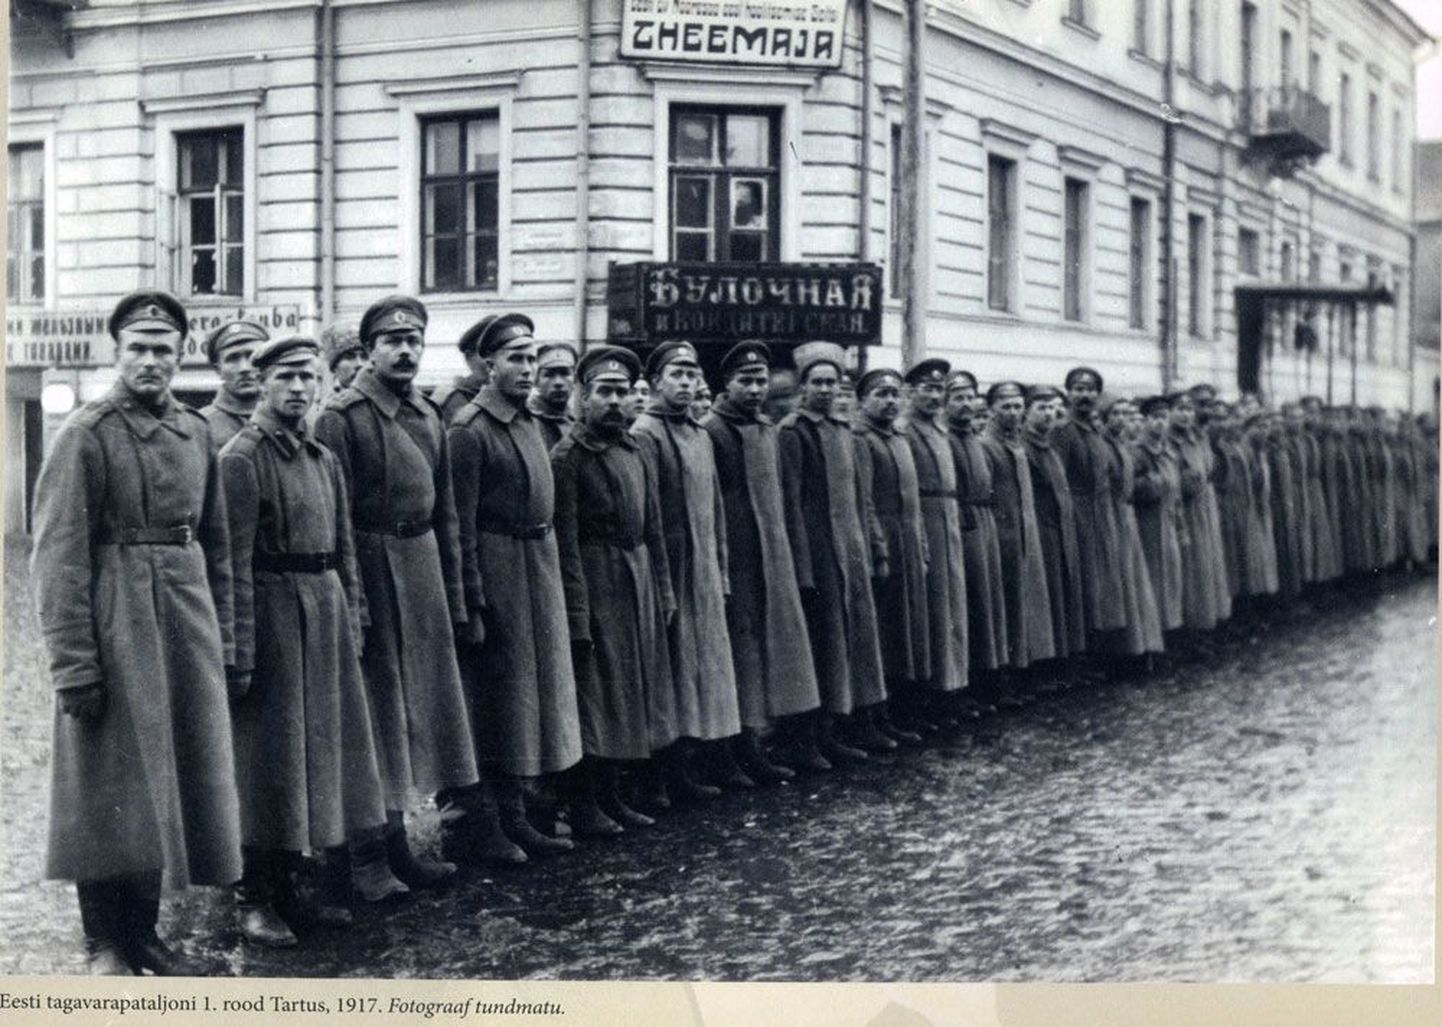 В 1917 году после Февральской революции была создана Эстонская национальная воинская часть. На снимке офицеры и солдаты 1-й роты Эстонского запасного батальона в 1917 году в Тарту.